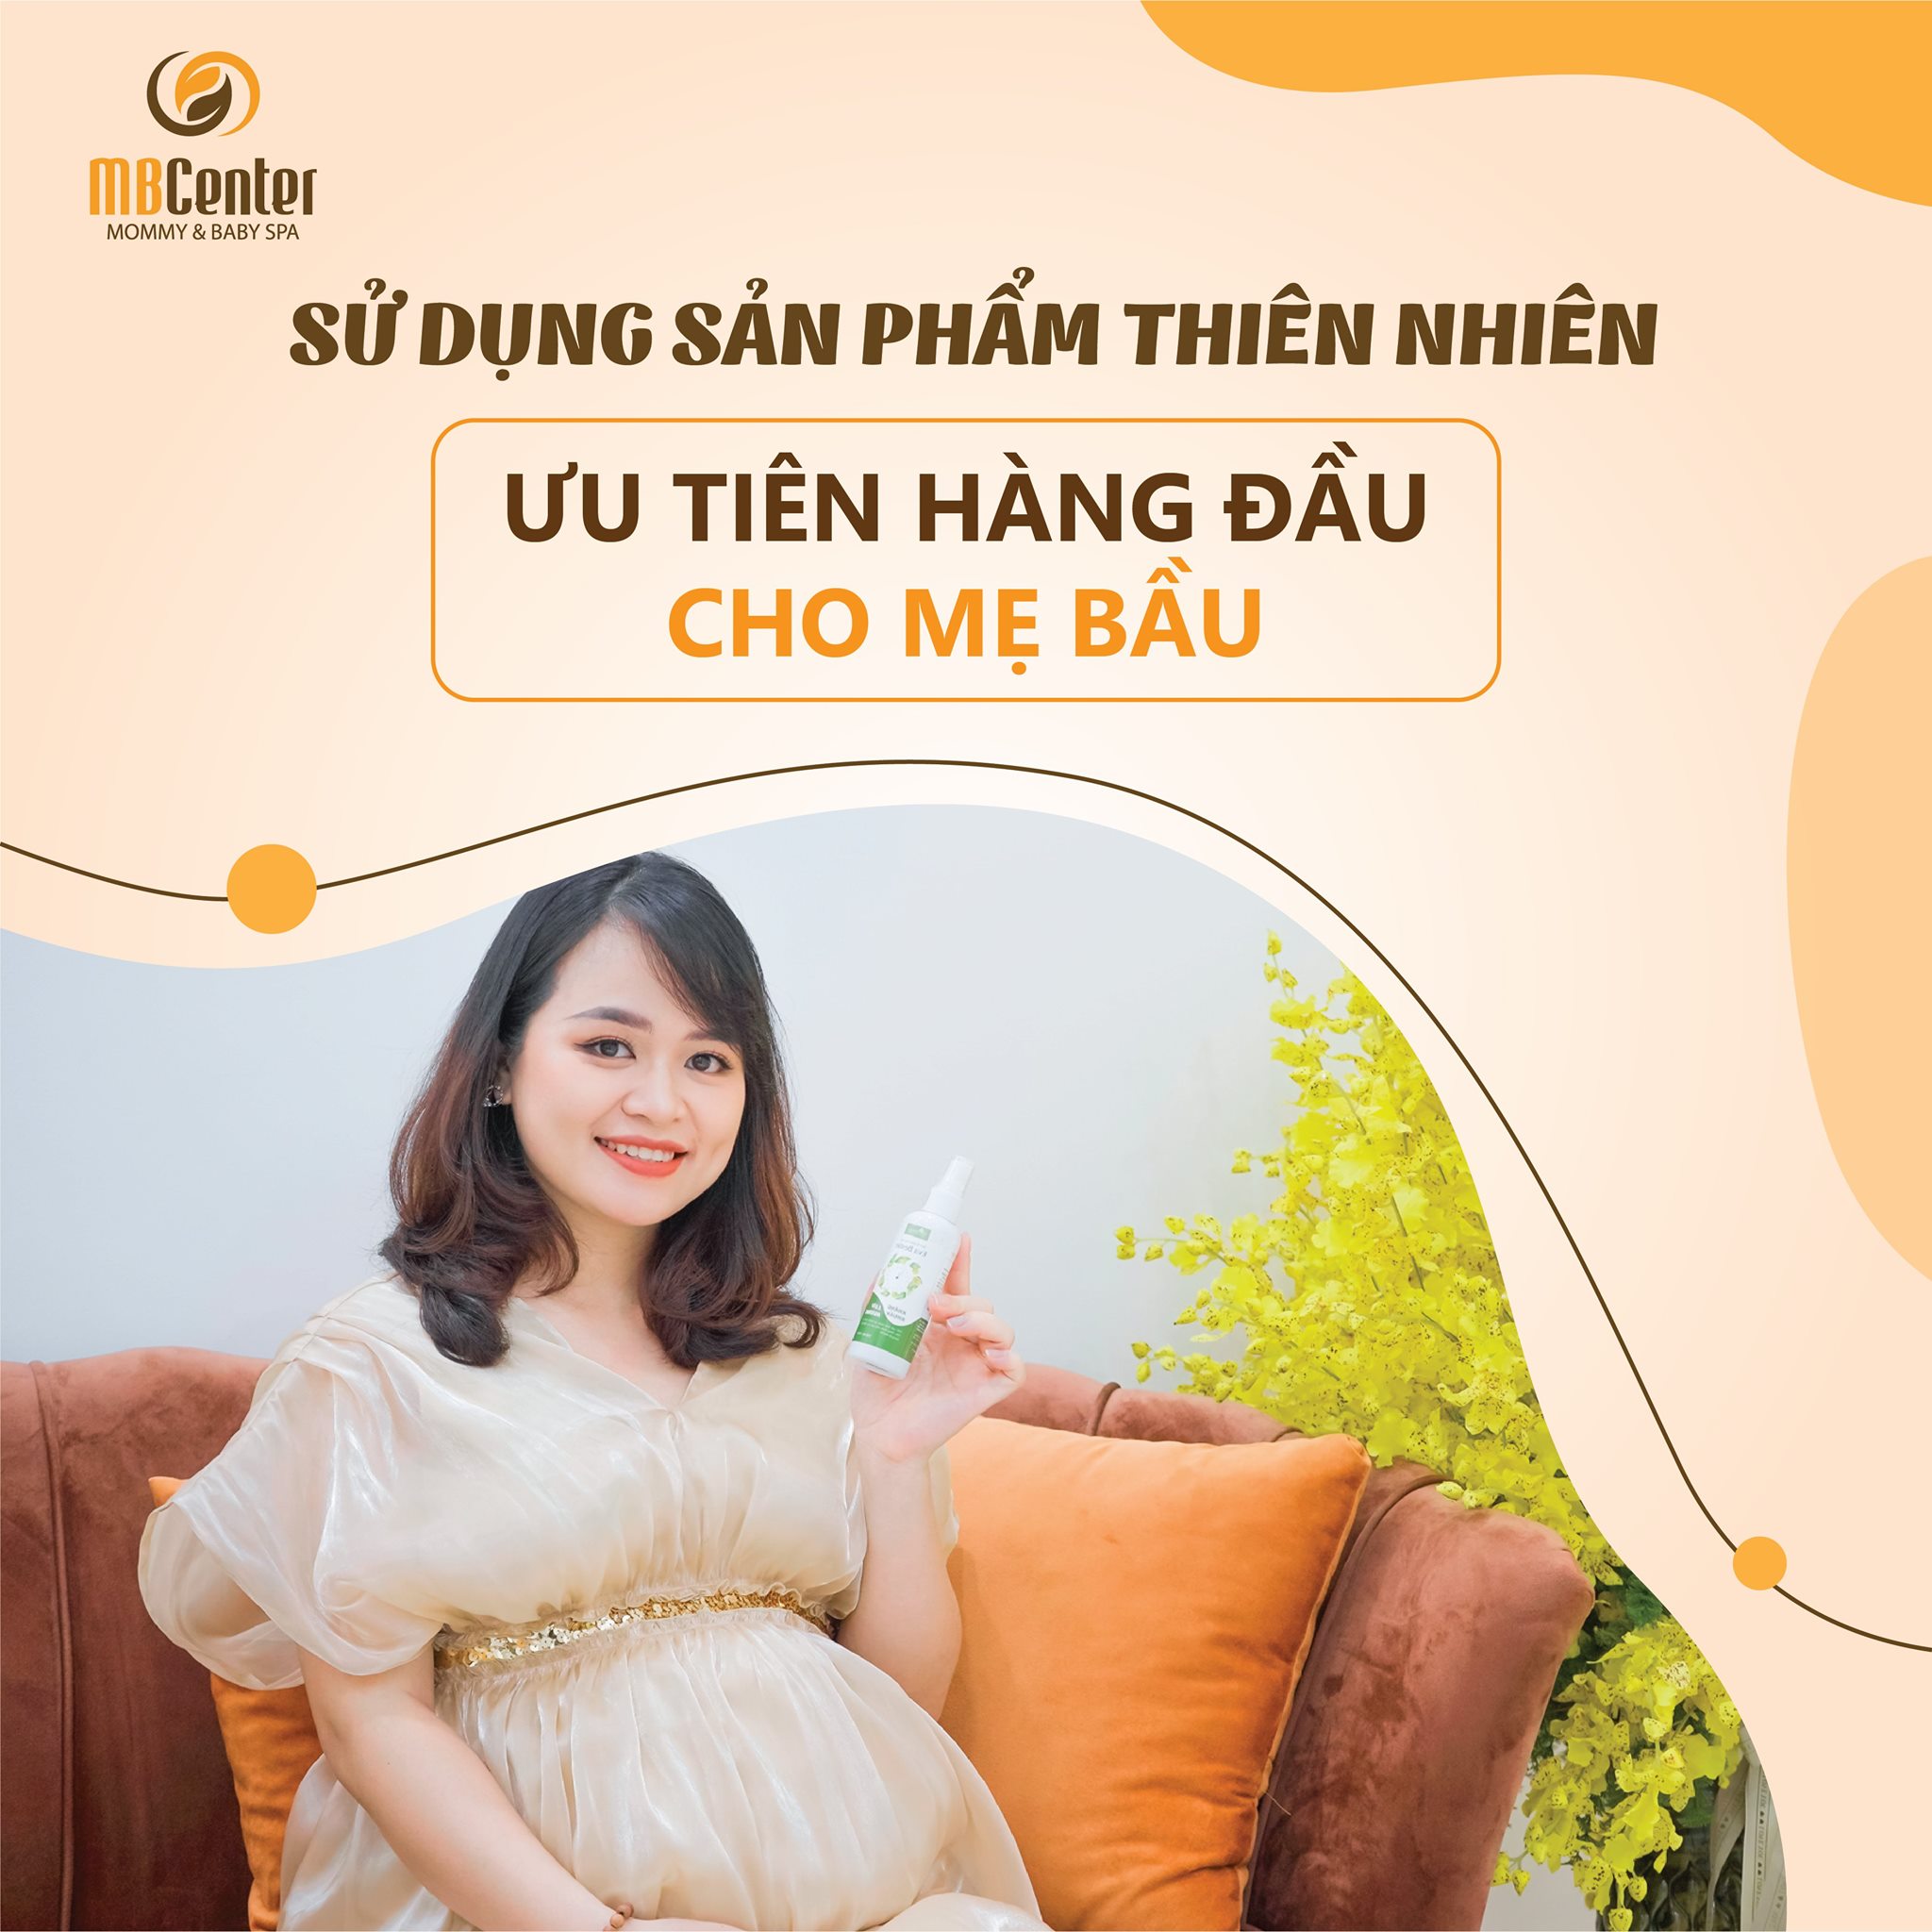 Top 7 Dịch vụ chăm sóc mẹ và bé uy tín, chất lượng nhất tại Hà Nội -  MB Center Spa